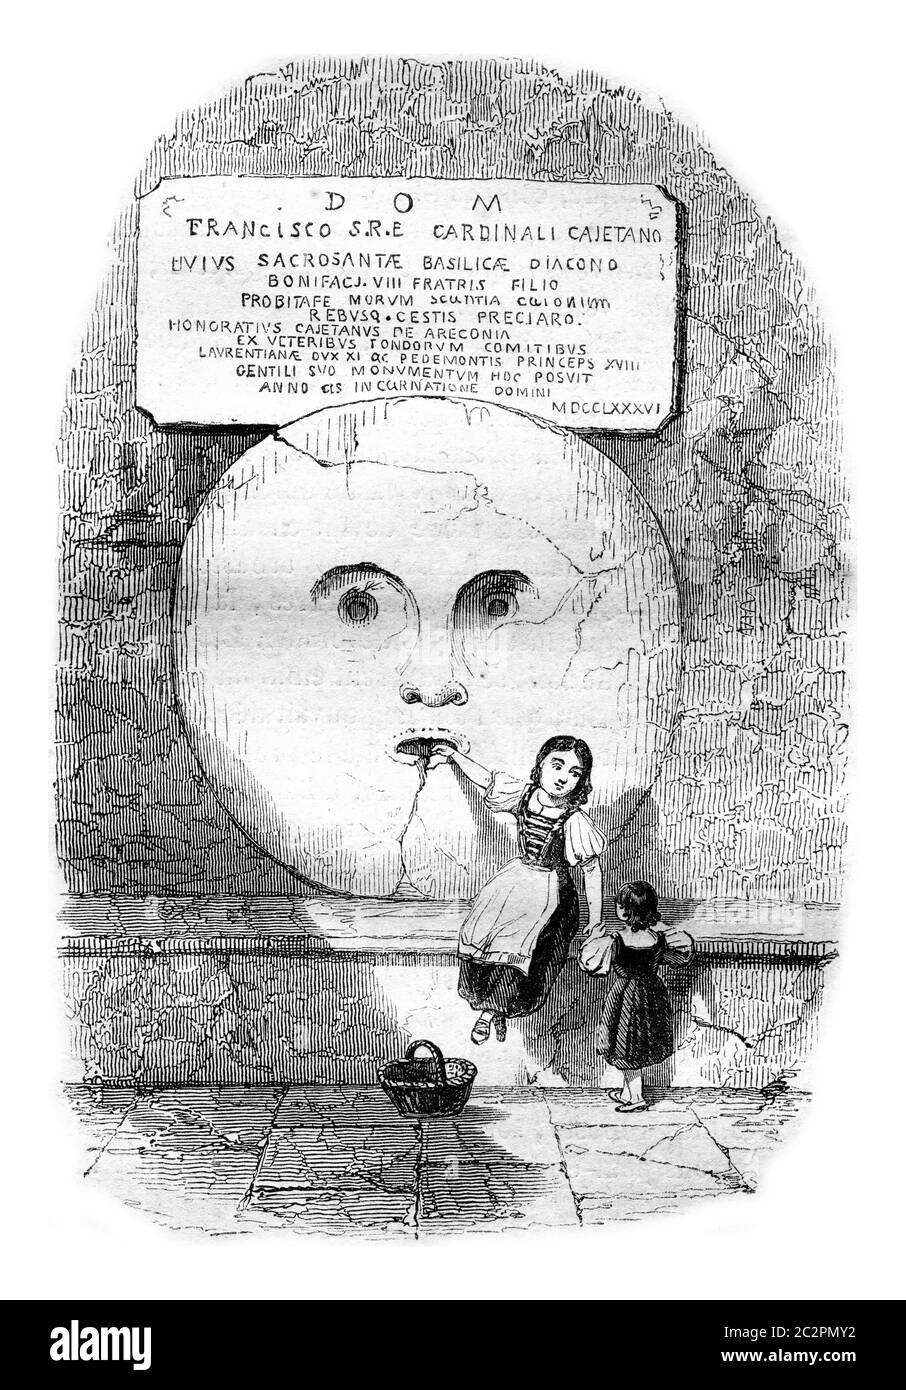 Der Mund der Wahrheit, unter dem Peristyl von Santa Maria in Cosmedin, in Rom, Vintage graviert Illustration. Magasin Pittoresque 1846. Stockfoto